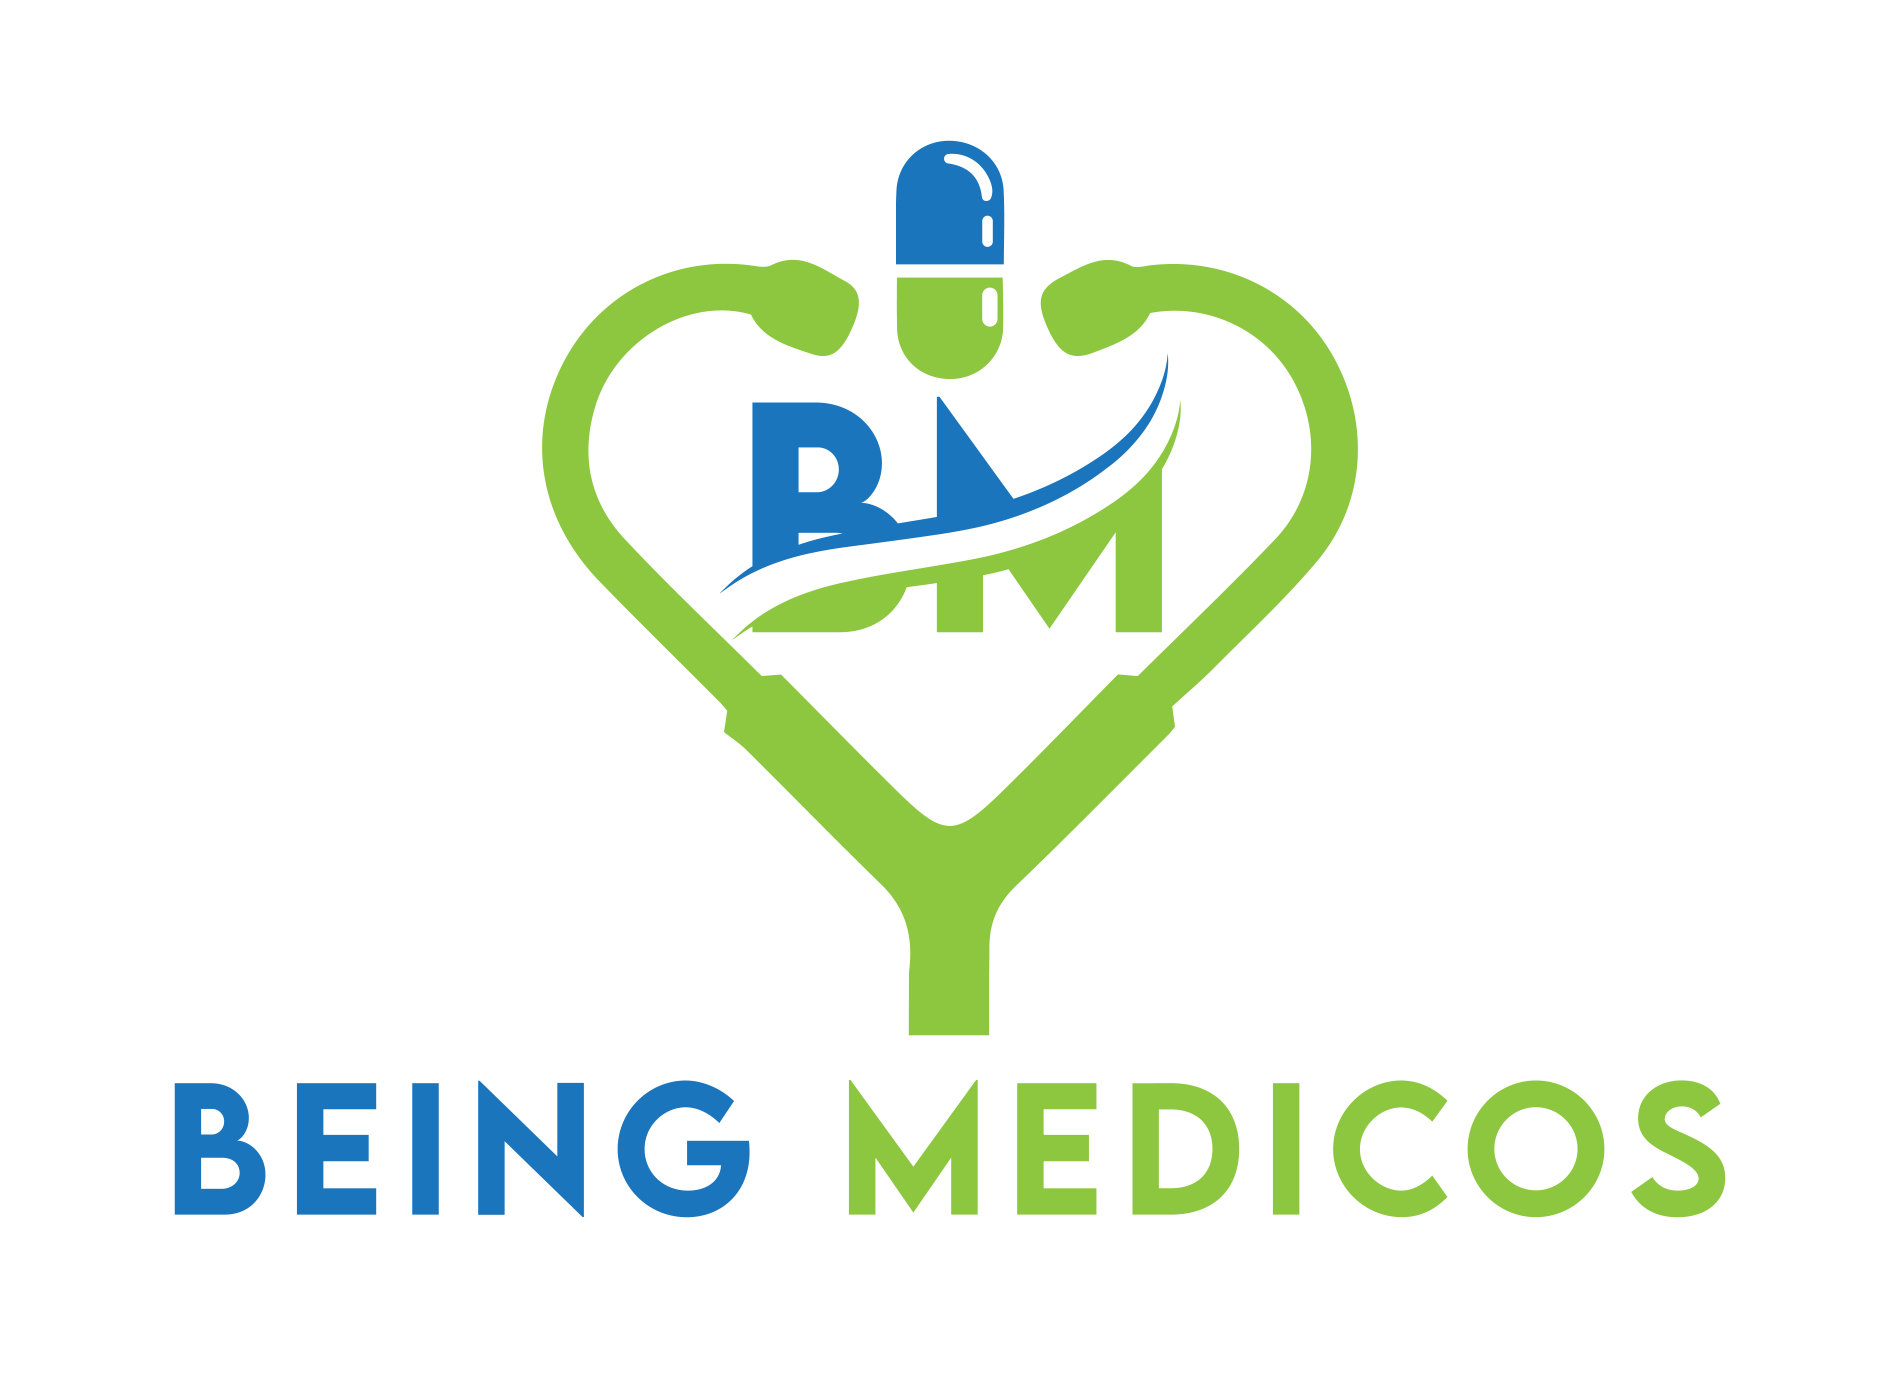 Being Medicos